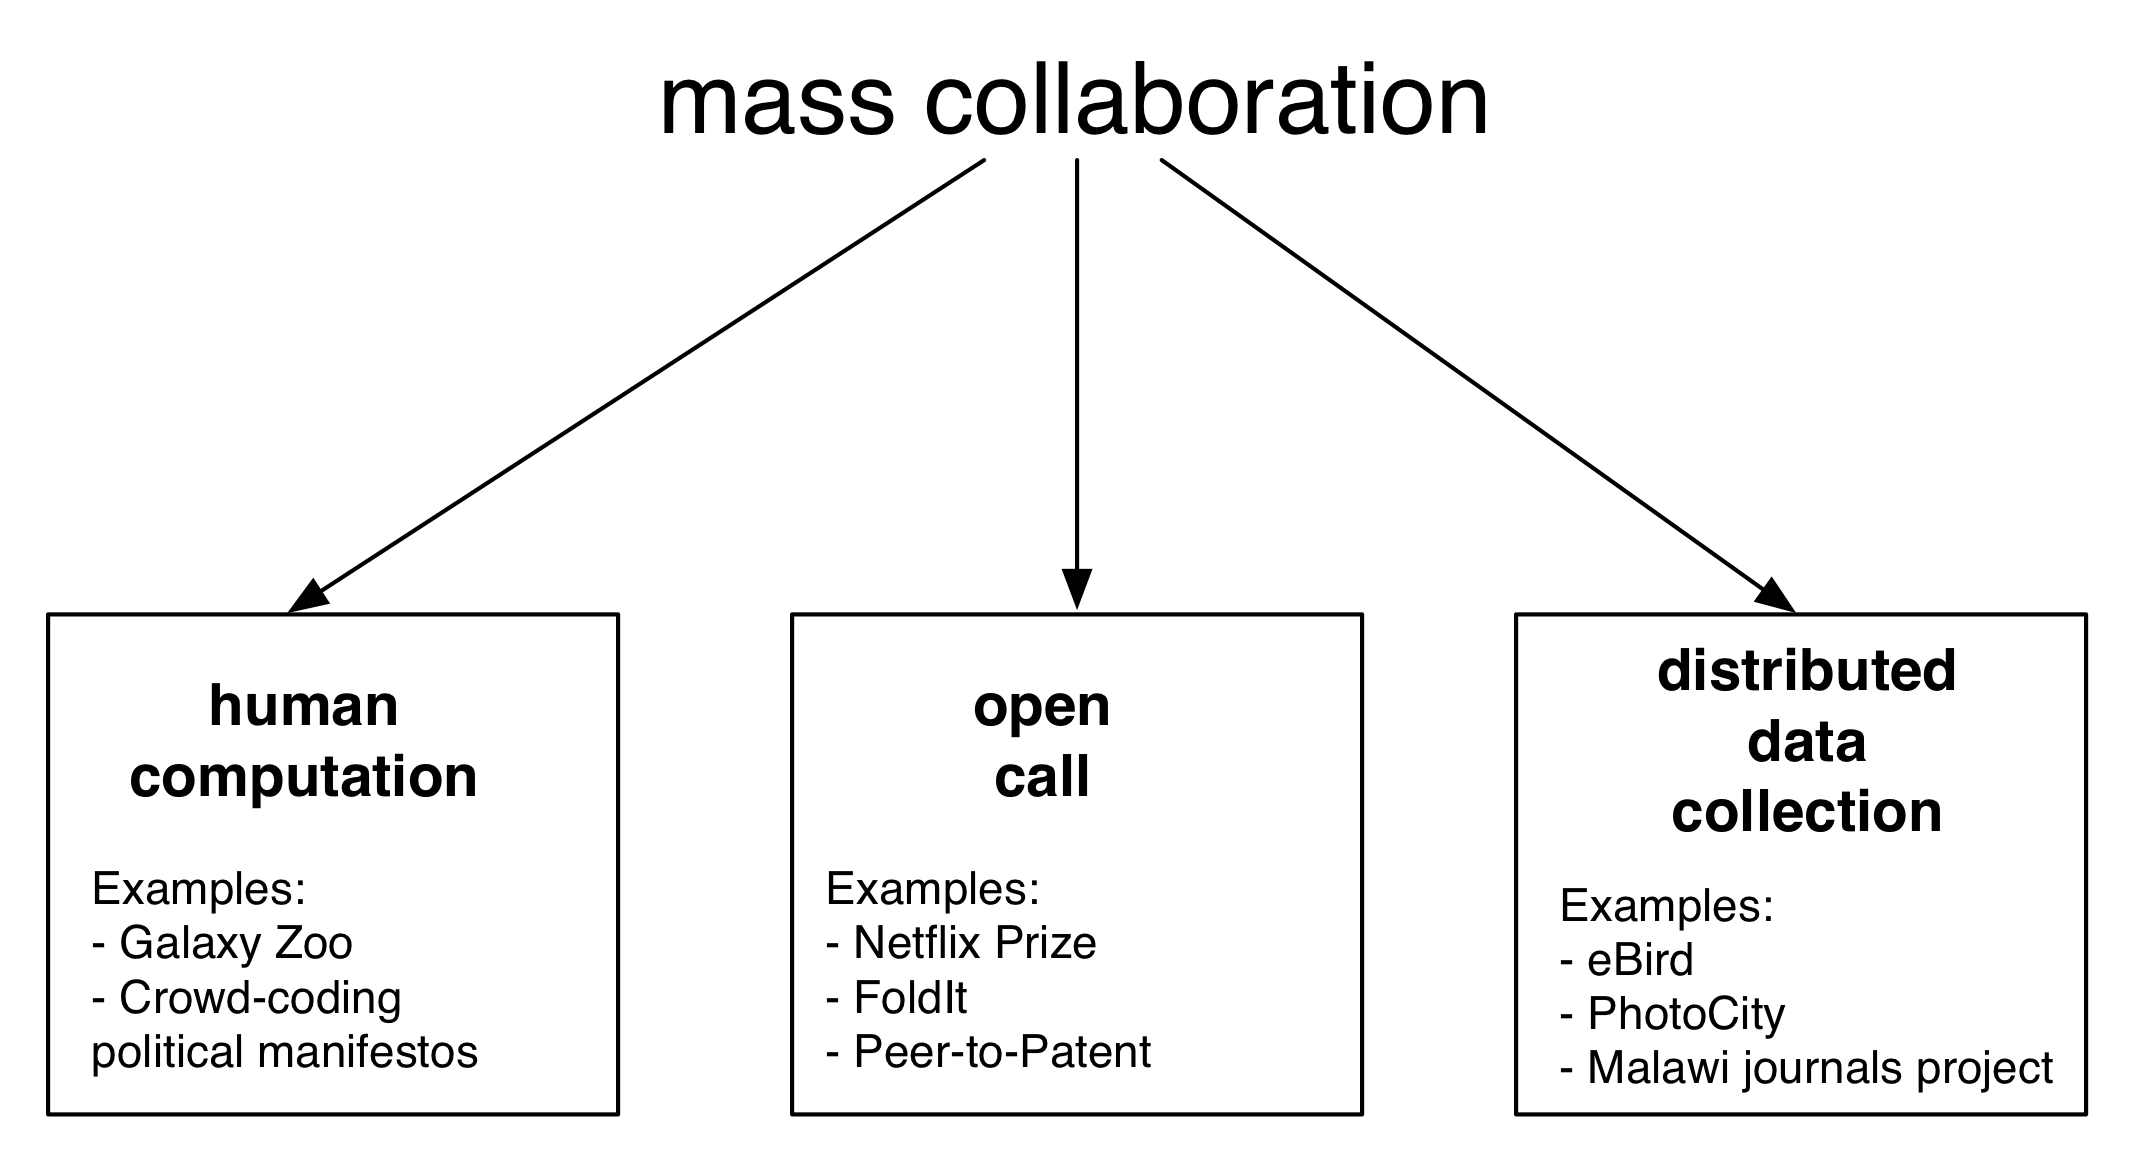 Figura 5.1: Esquema col·laboració massiva. En aquest capítol s'organitza al voltant de tres formes principals de la col·laboració massiva: la computació humana, anomenada oberta, i recol·lecció de dades distribuïda. De manera més general, la col·laboració massiva combina idees de camps com la ciència ciutadana, el crowdsourcing, i la intel·ligència col·lectiva.